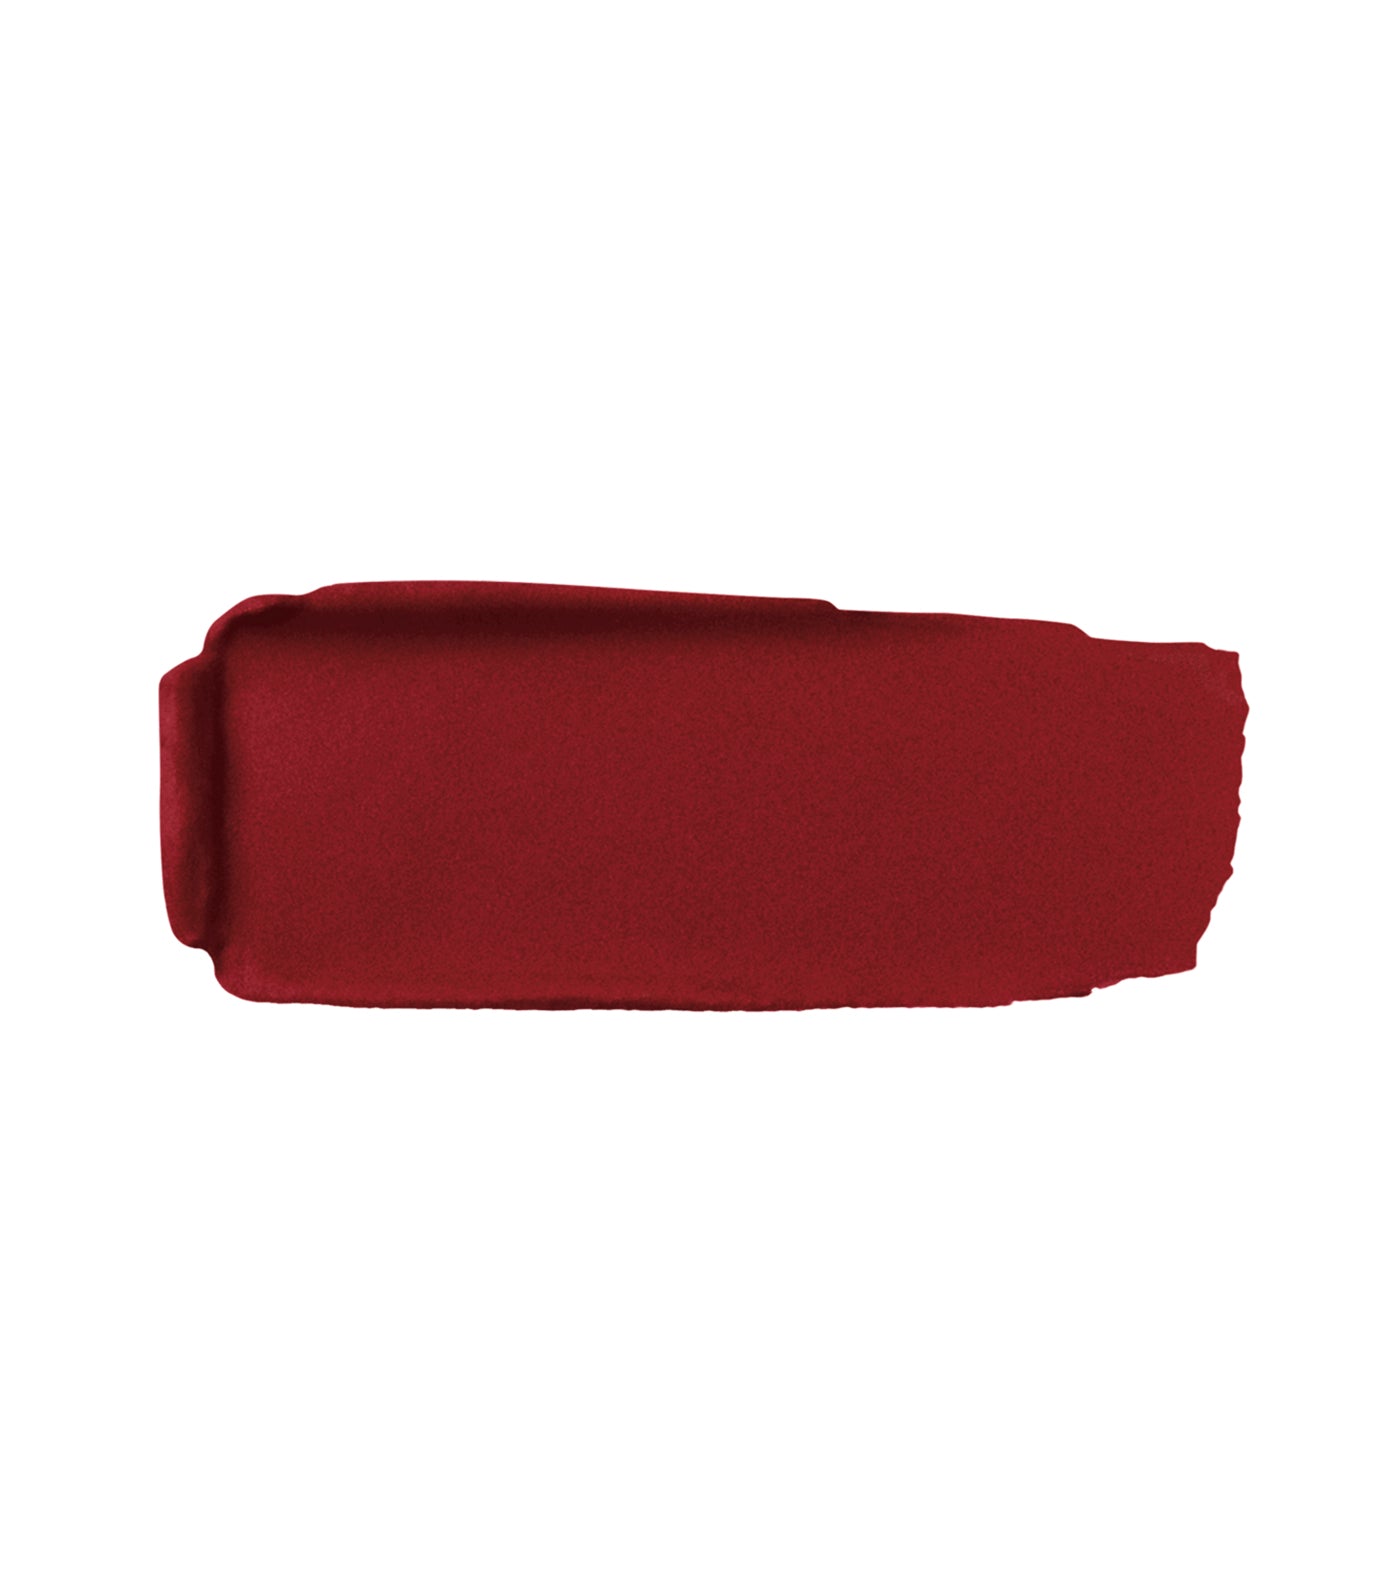 Rouge G Luxurious Velvet Lipstick Shade Refill